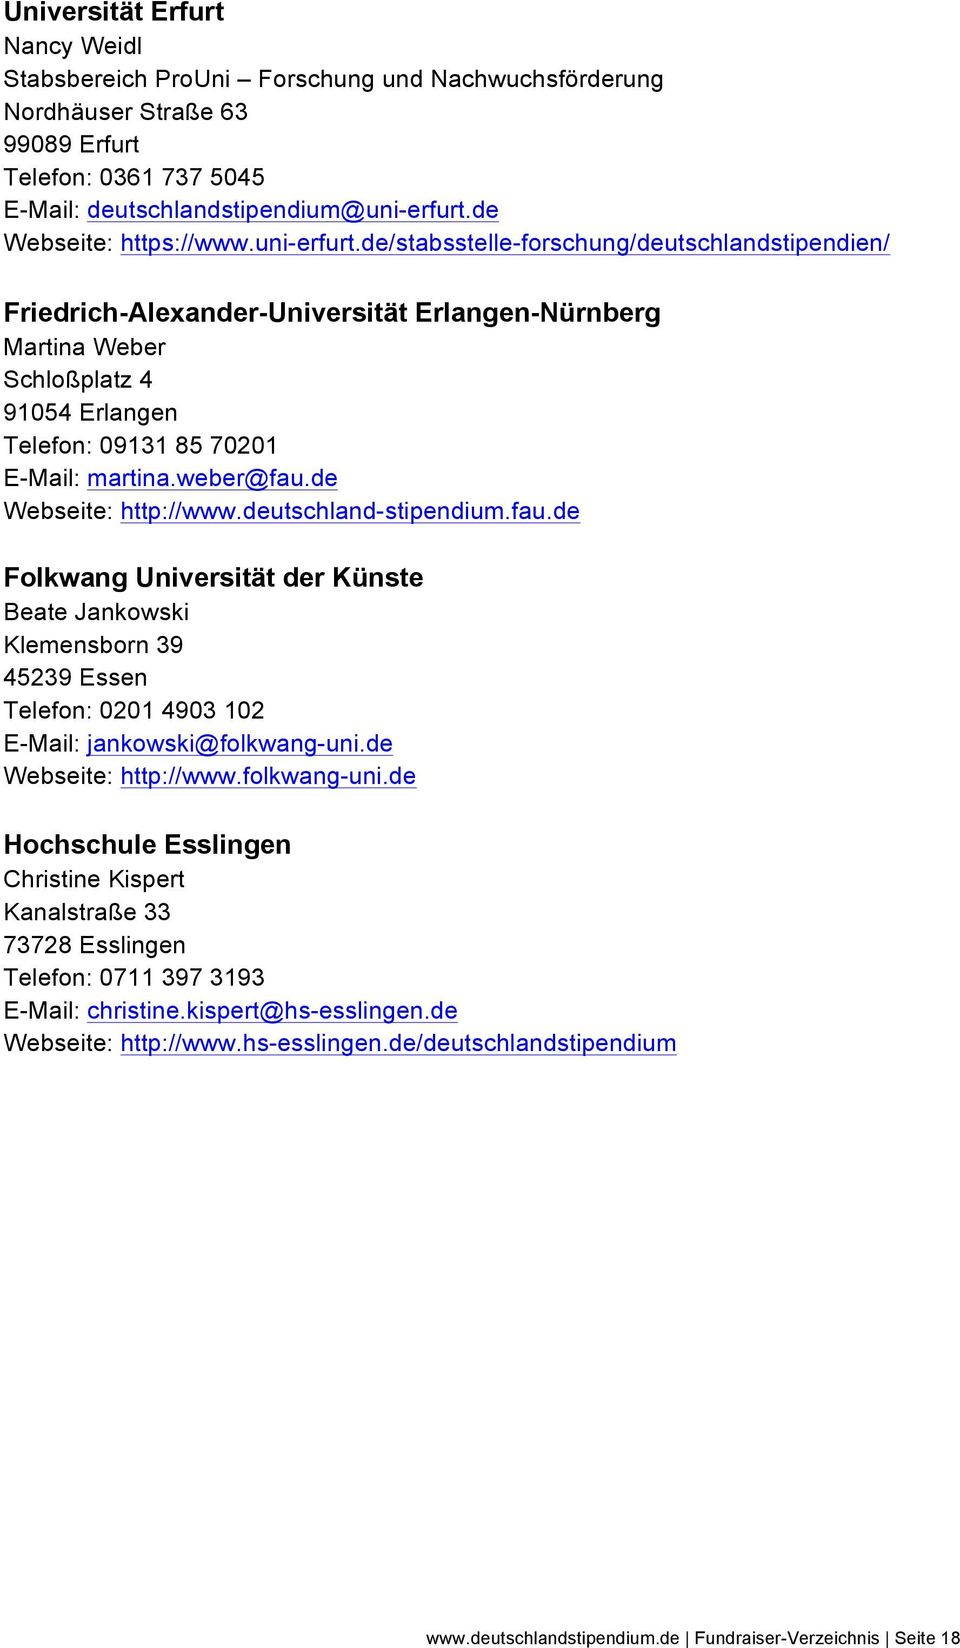 de/stabsstelle-forschung/deutschlandstipendien/ Friedrich-Alexander-Universität Erlangen-Nürnberg Martina Weber Schloßplatz 4 91054 Erlangen Telefon: 09131 85 70201 E-Mail: martina.weber@fau.